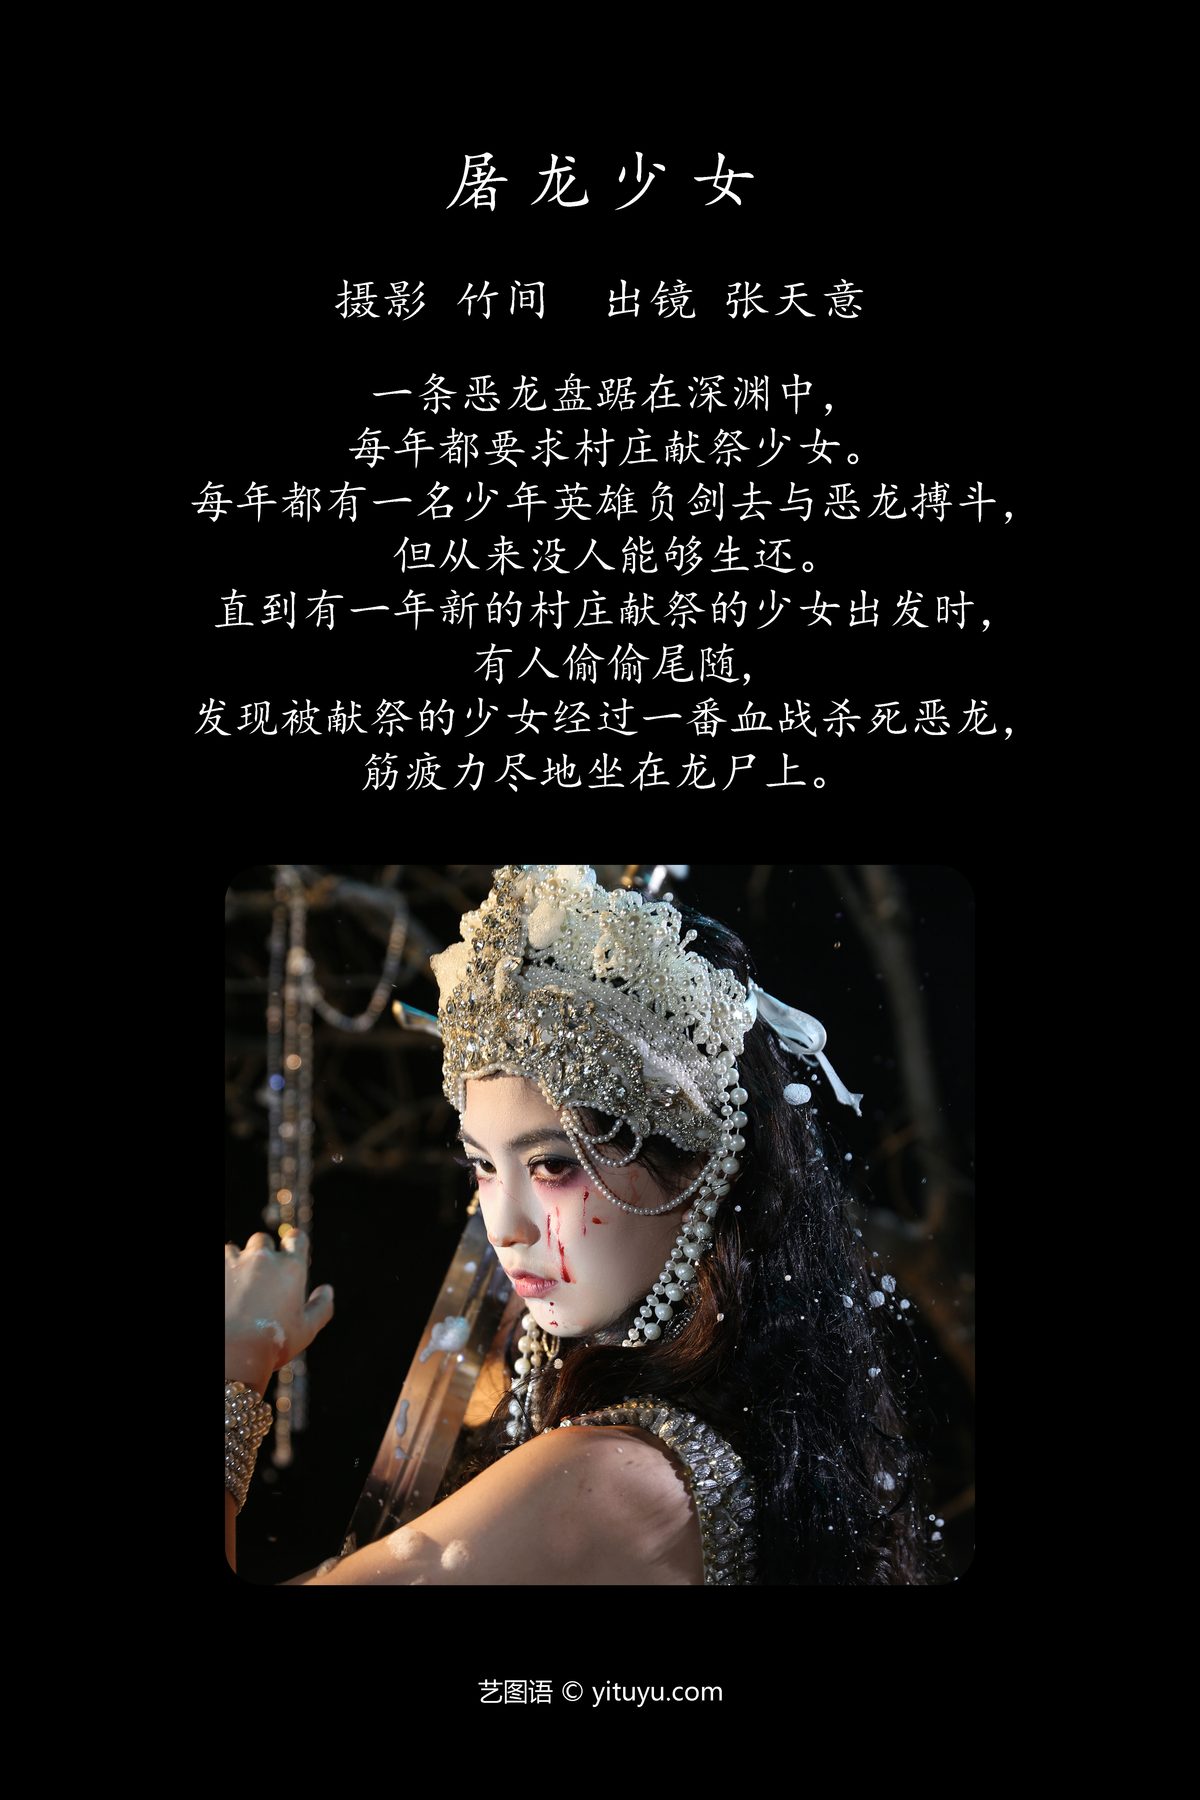 YiTuYu艺图语 Vol 4746 Kilonova Tian Ni Tian Yi 0001 6120821757.jpg